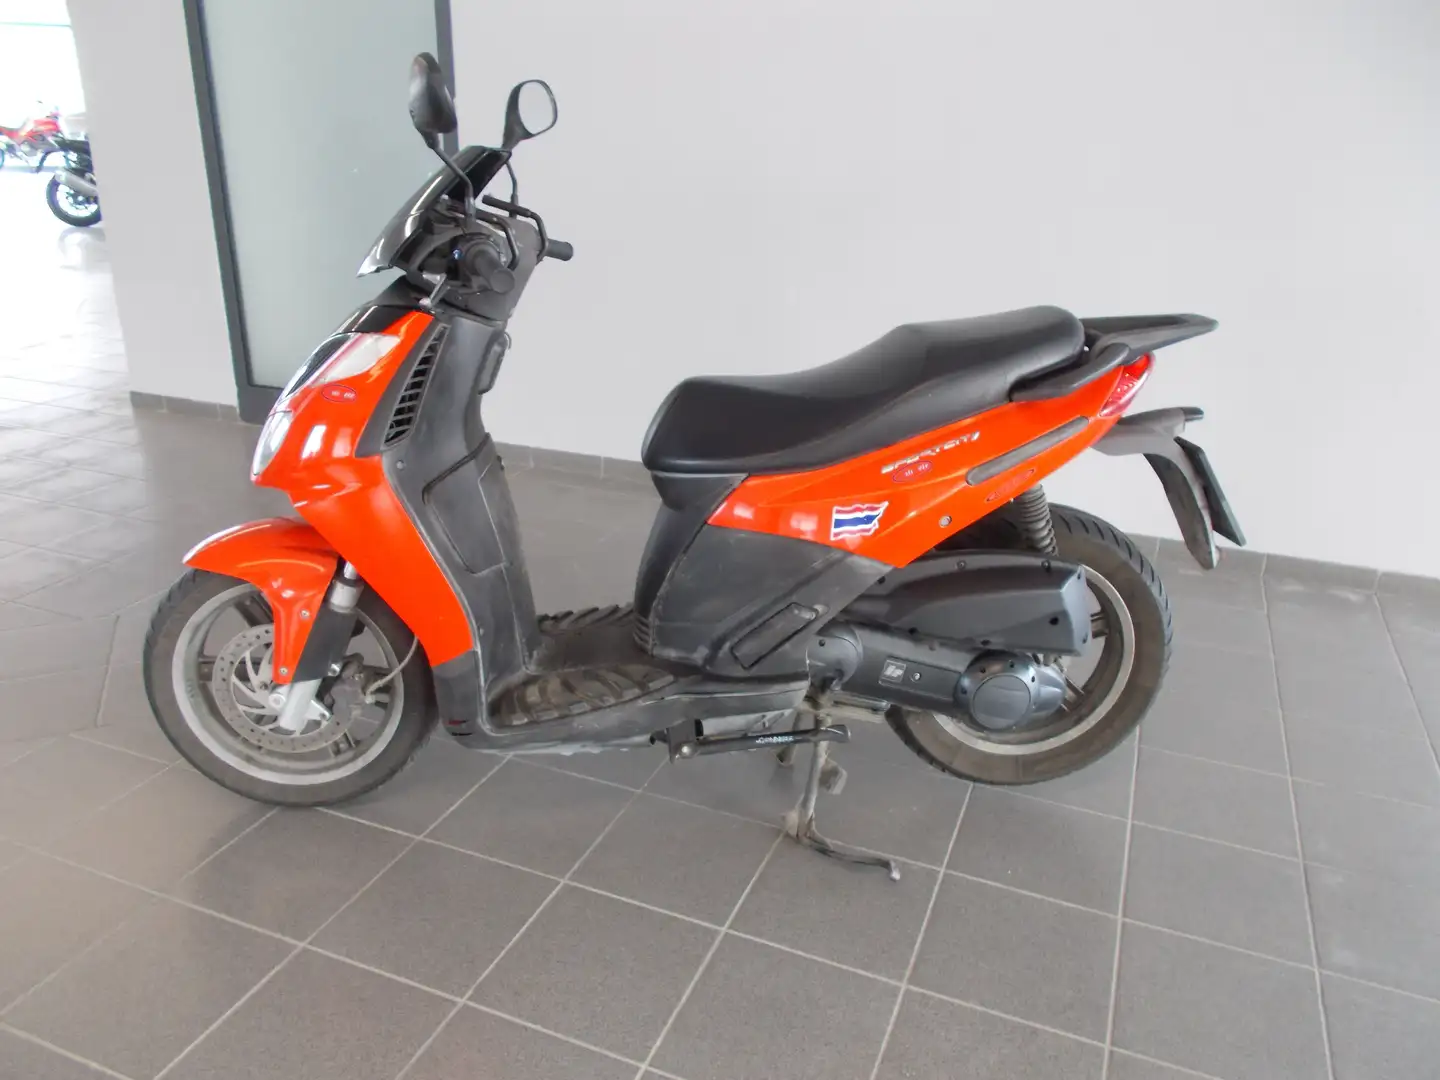 usato Aprilia Sportcity 200 Scooter a Alba - Cuneo - Cn per € 900,-